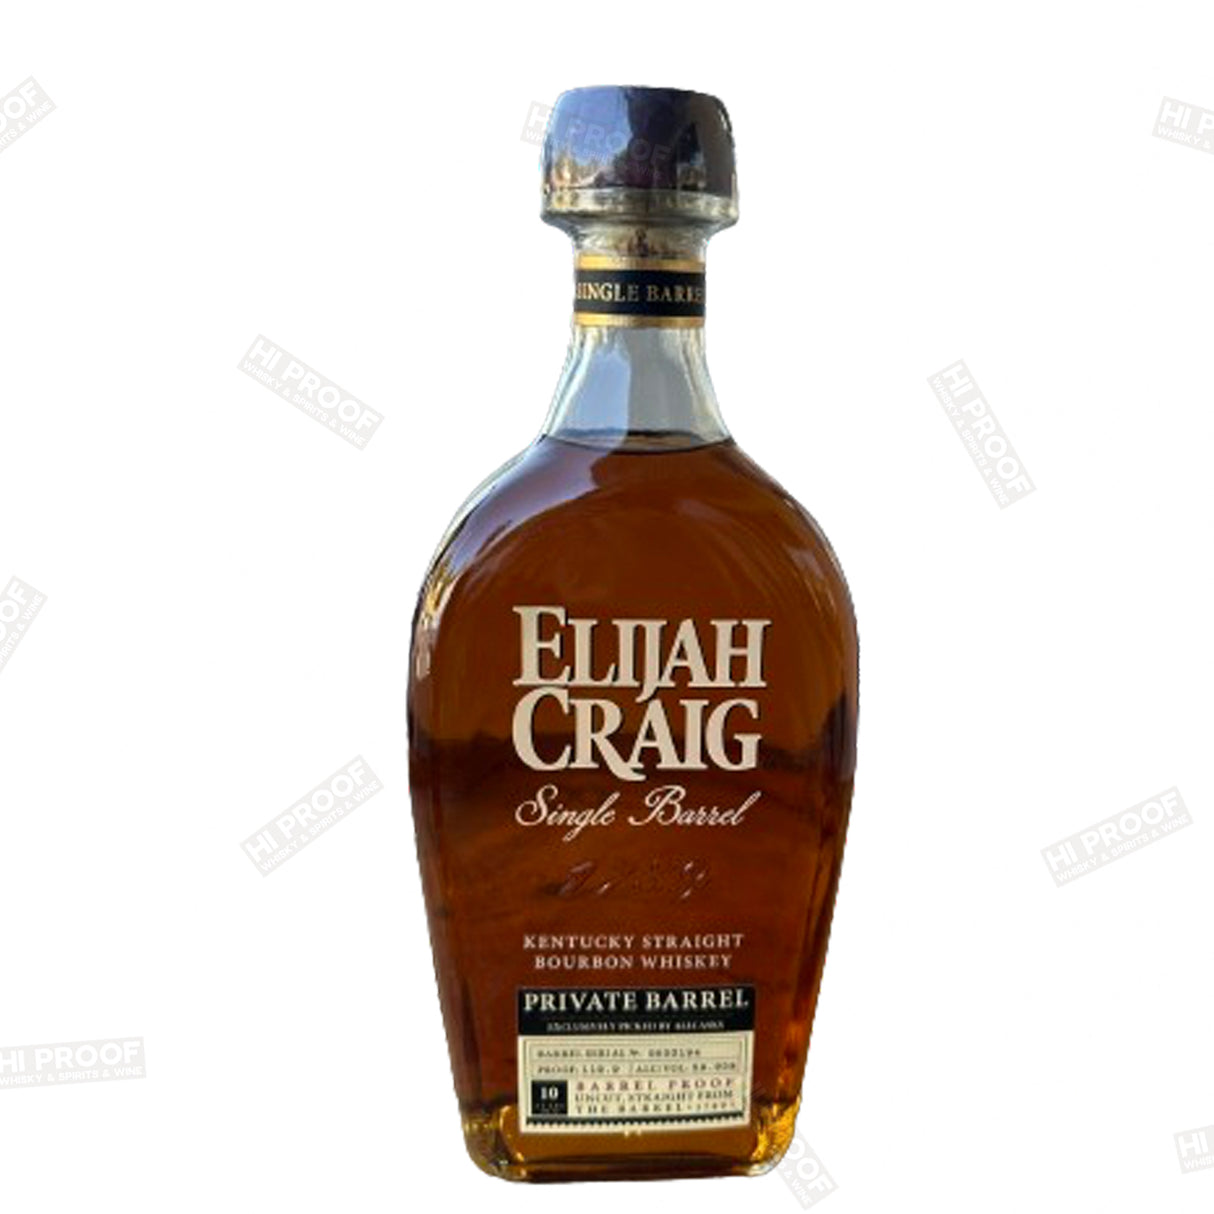 Elijah Craig Single Barrel "Private Barrel" 10 Years Barrel Proof 750ml